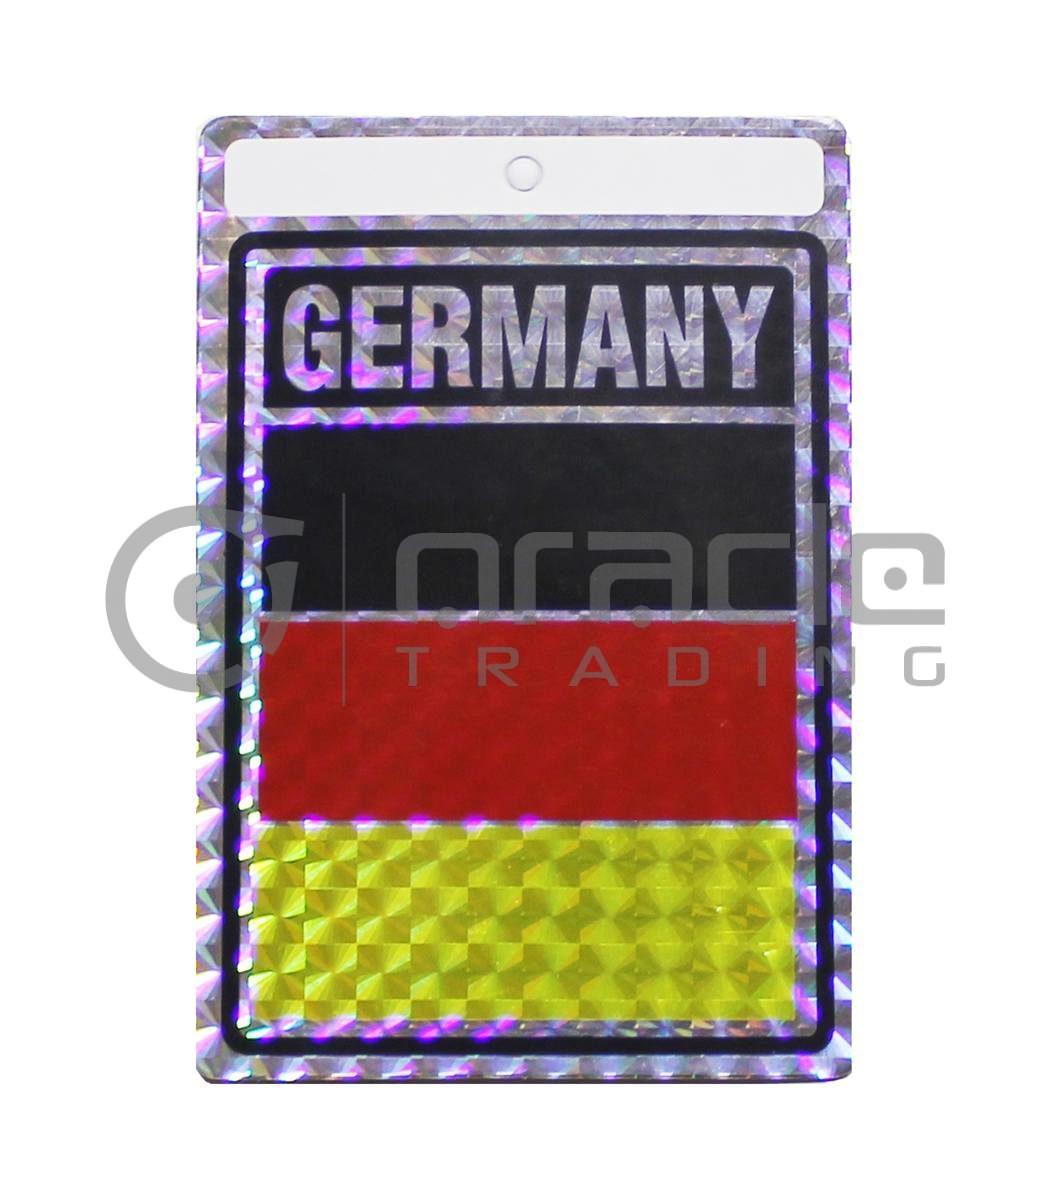 Germany Square Bumper Sticker